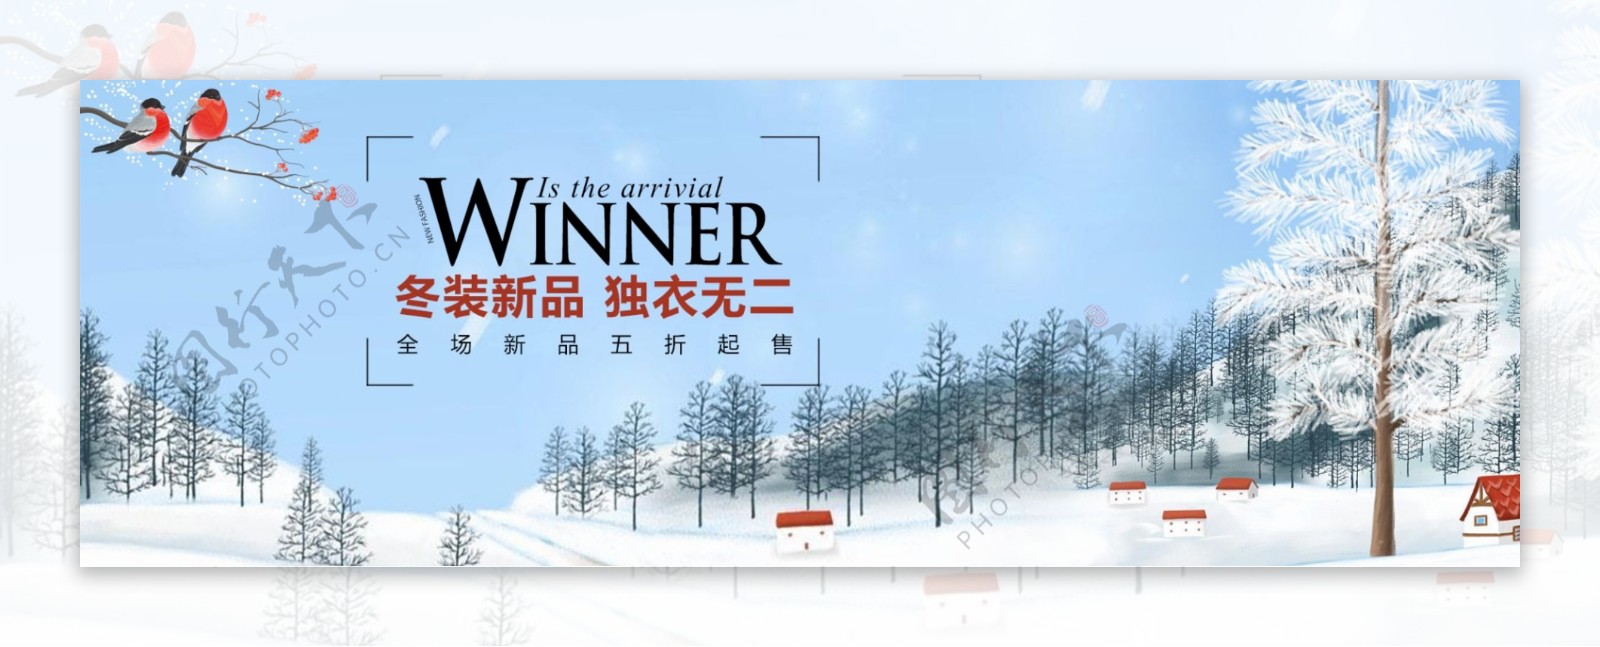 清新文艺下雪雪景冬季冬装淘宝banner